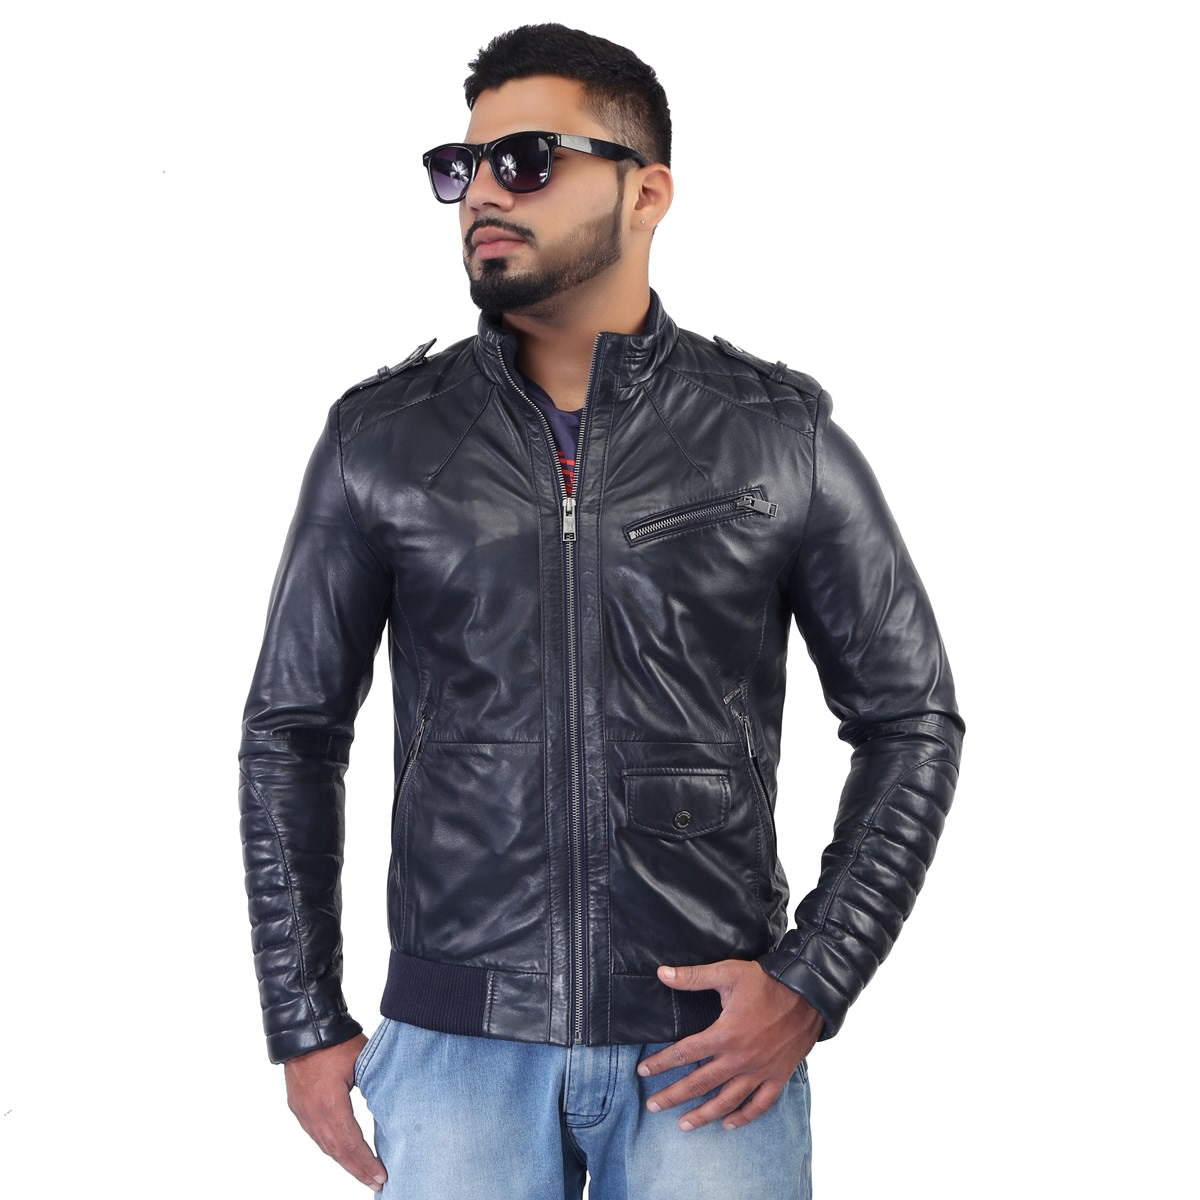 Bareskin Men's Navy Quilted Details Genuine Leather Biker Jacket